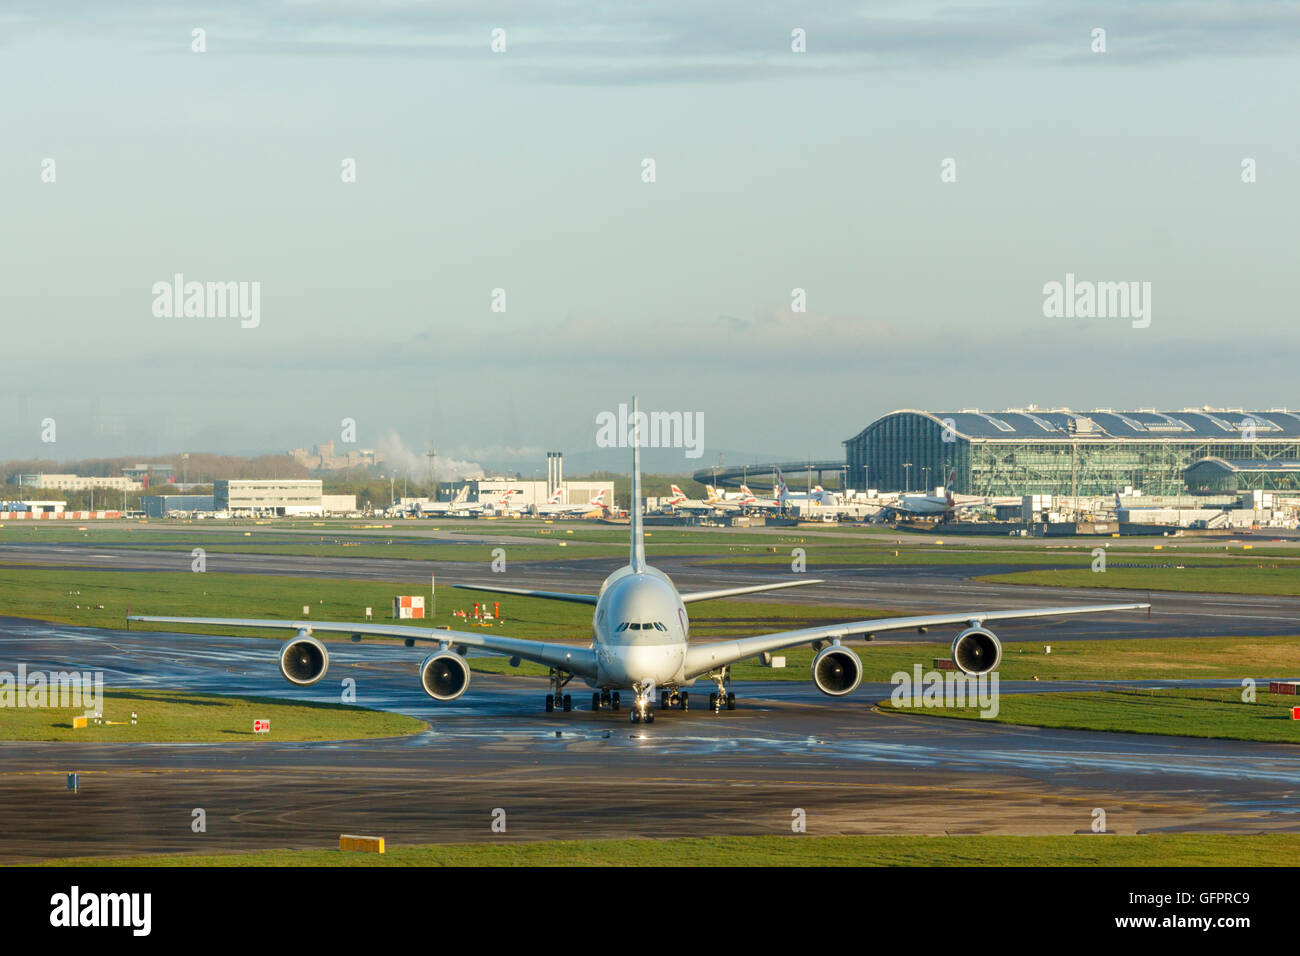 Qatar Airways Airbus A380 am Flughafen Rollen. Aufgenommen am Flughafen London Hethrow Stockfoto